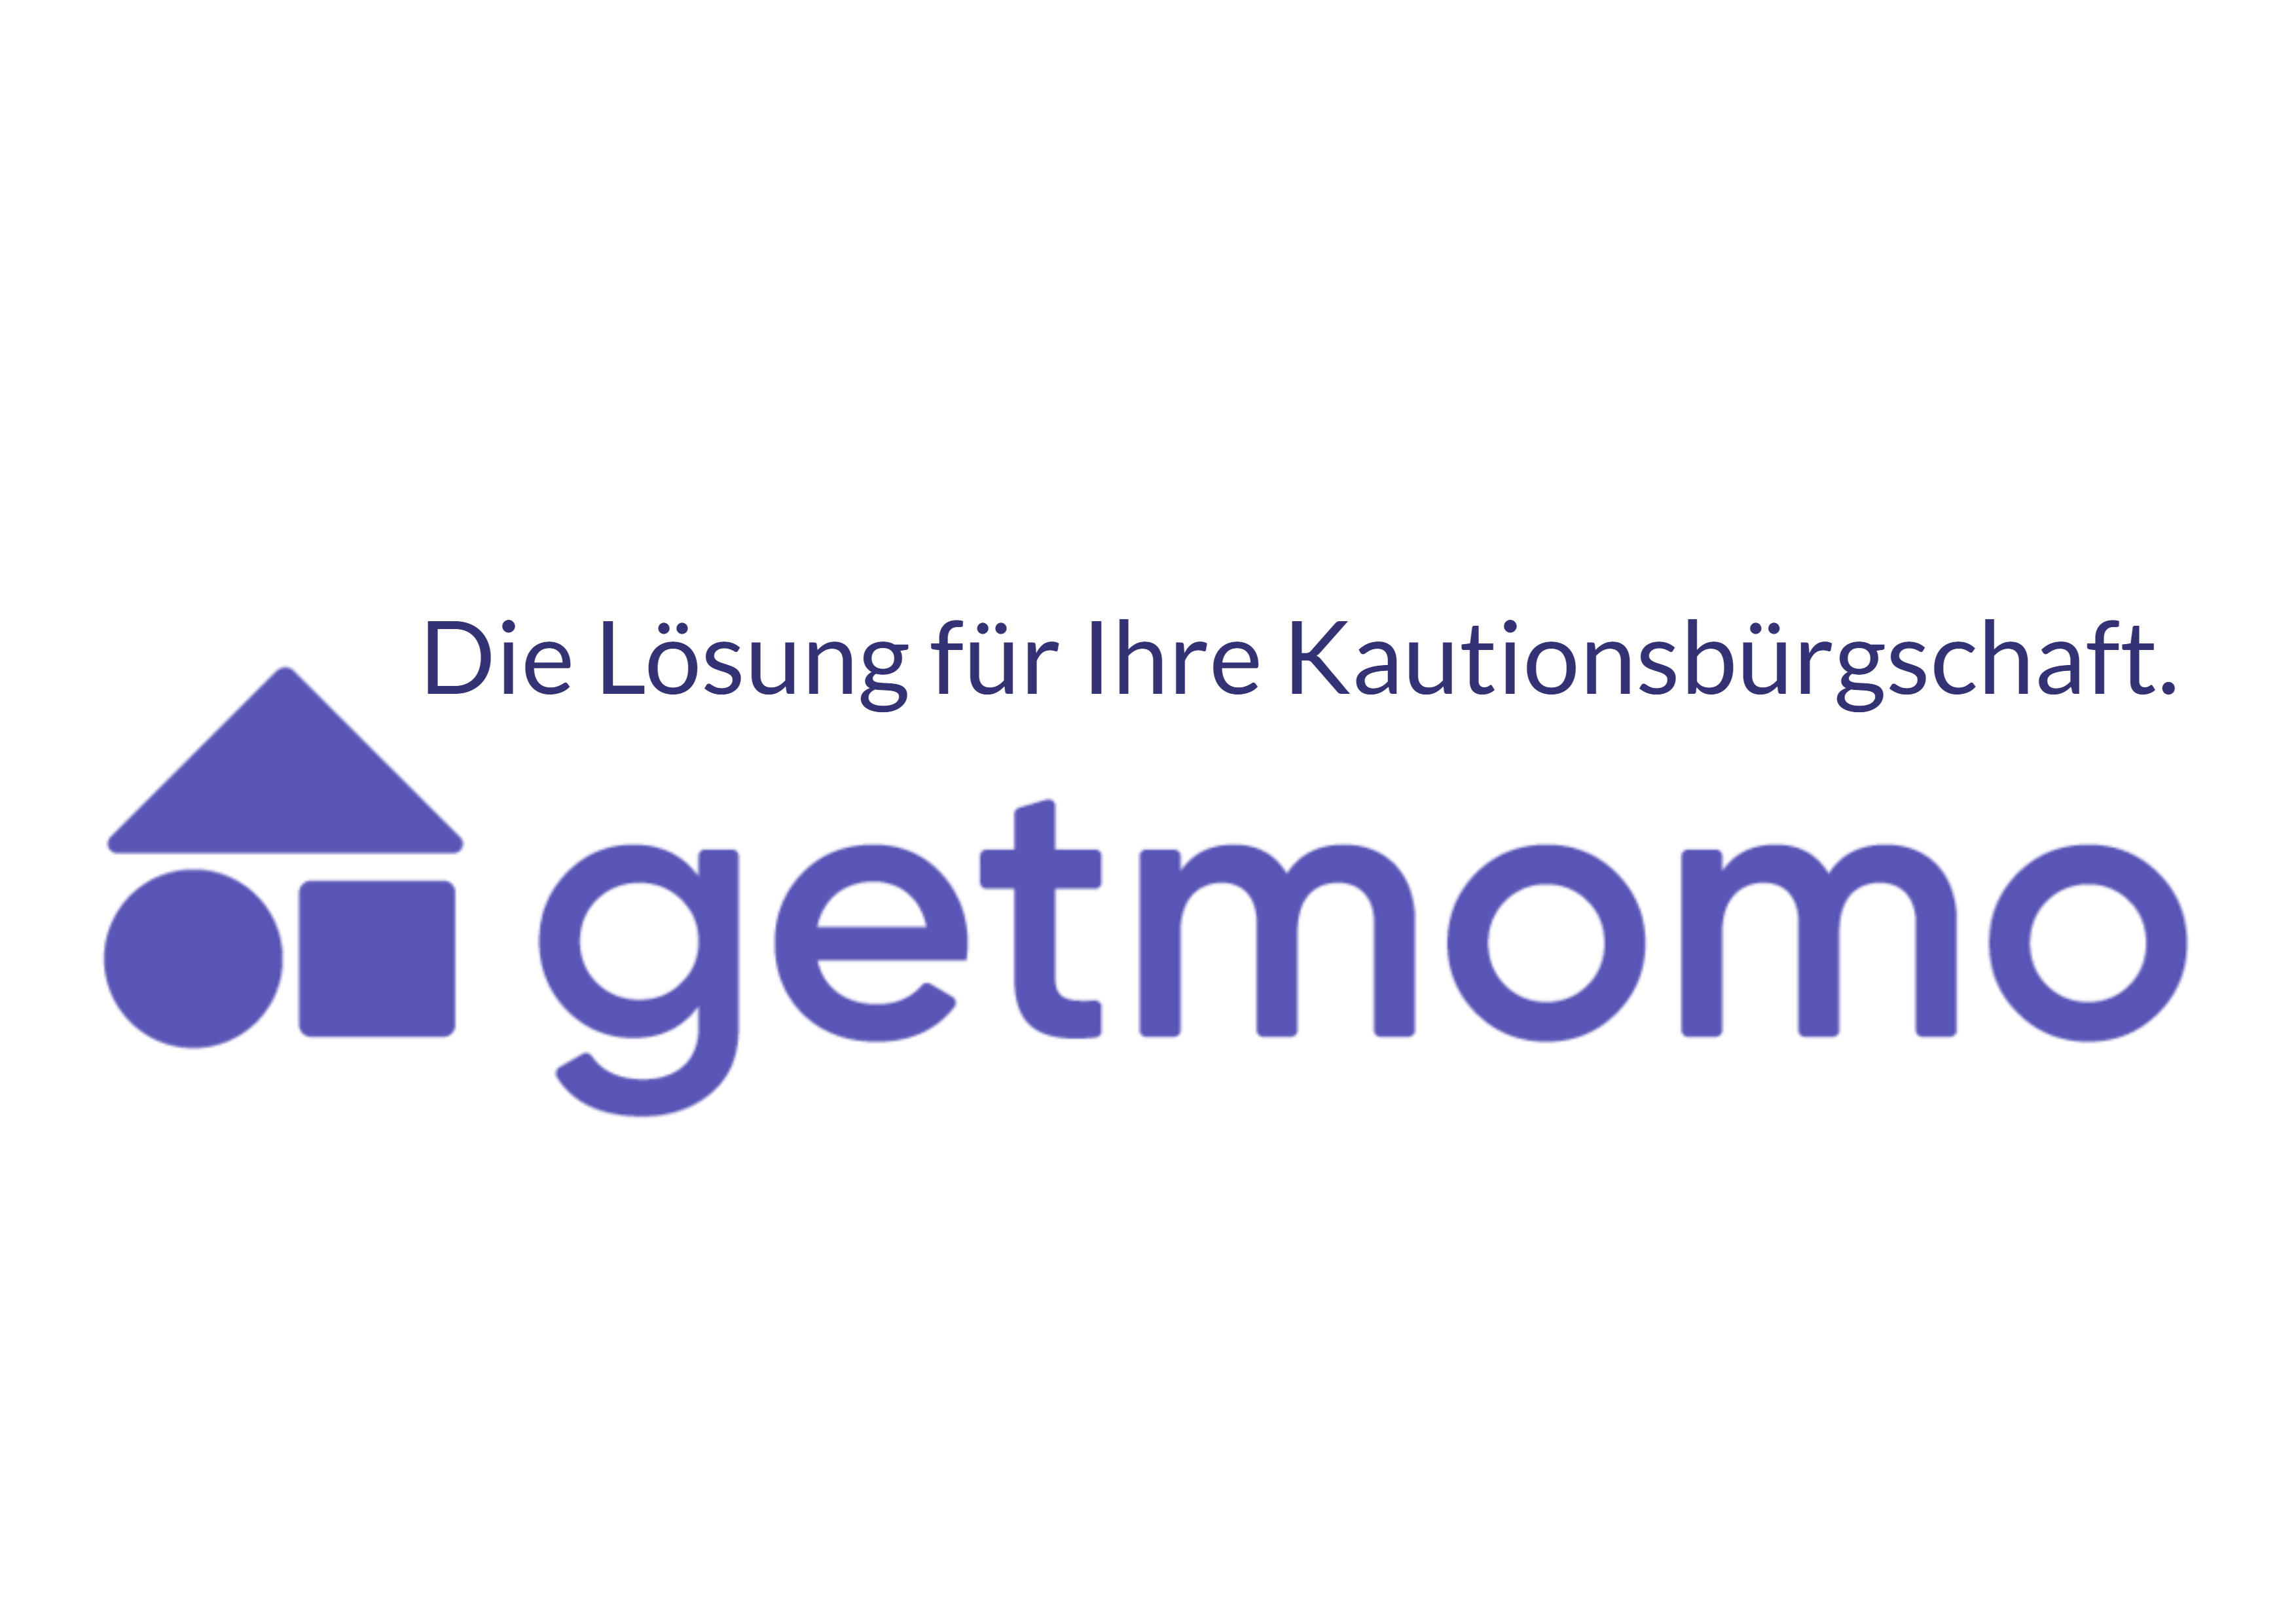 Getmomo Financials - Die Alternative zur Mietkaution!